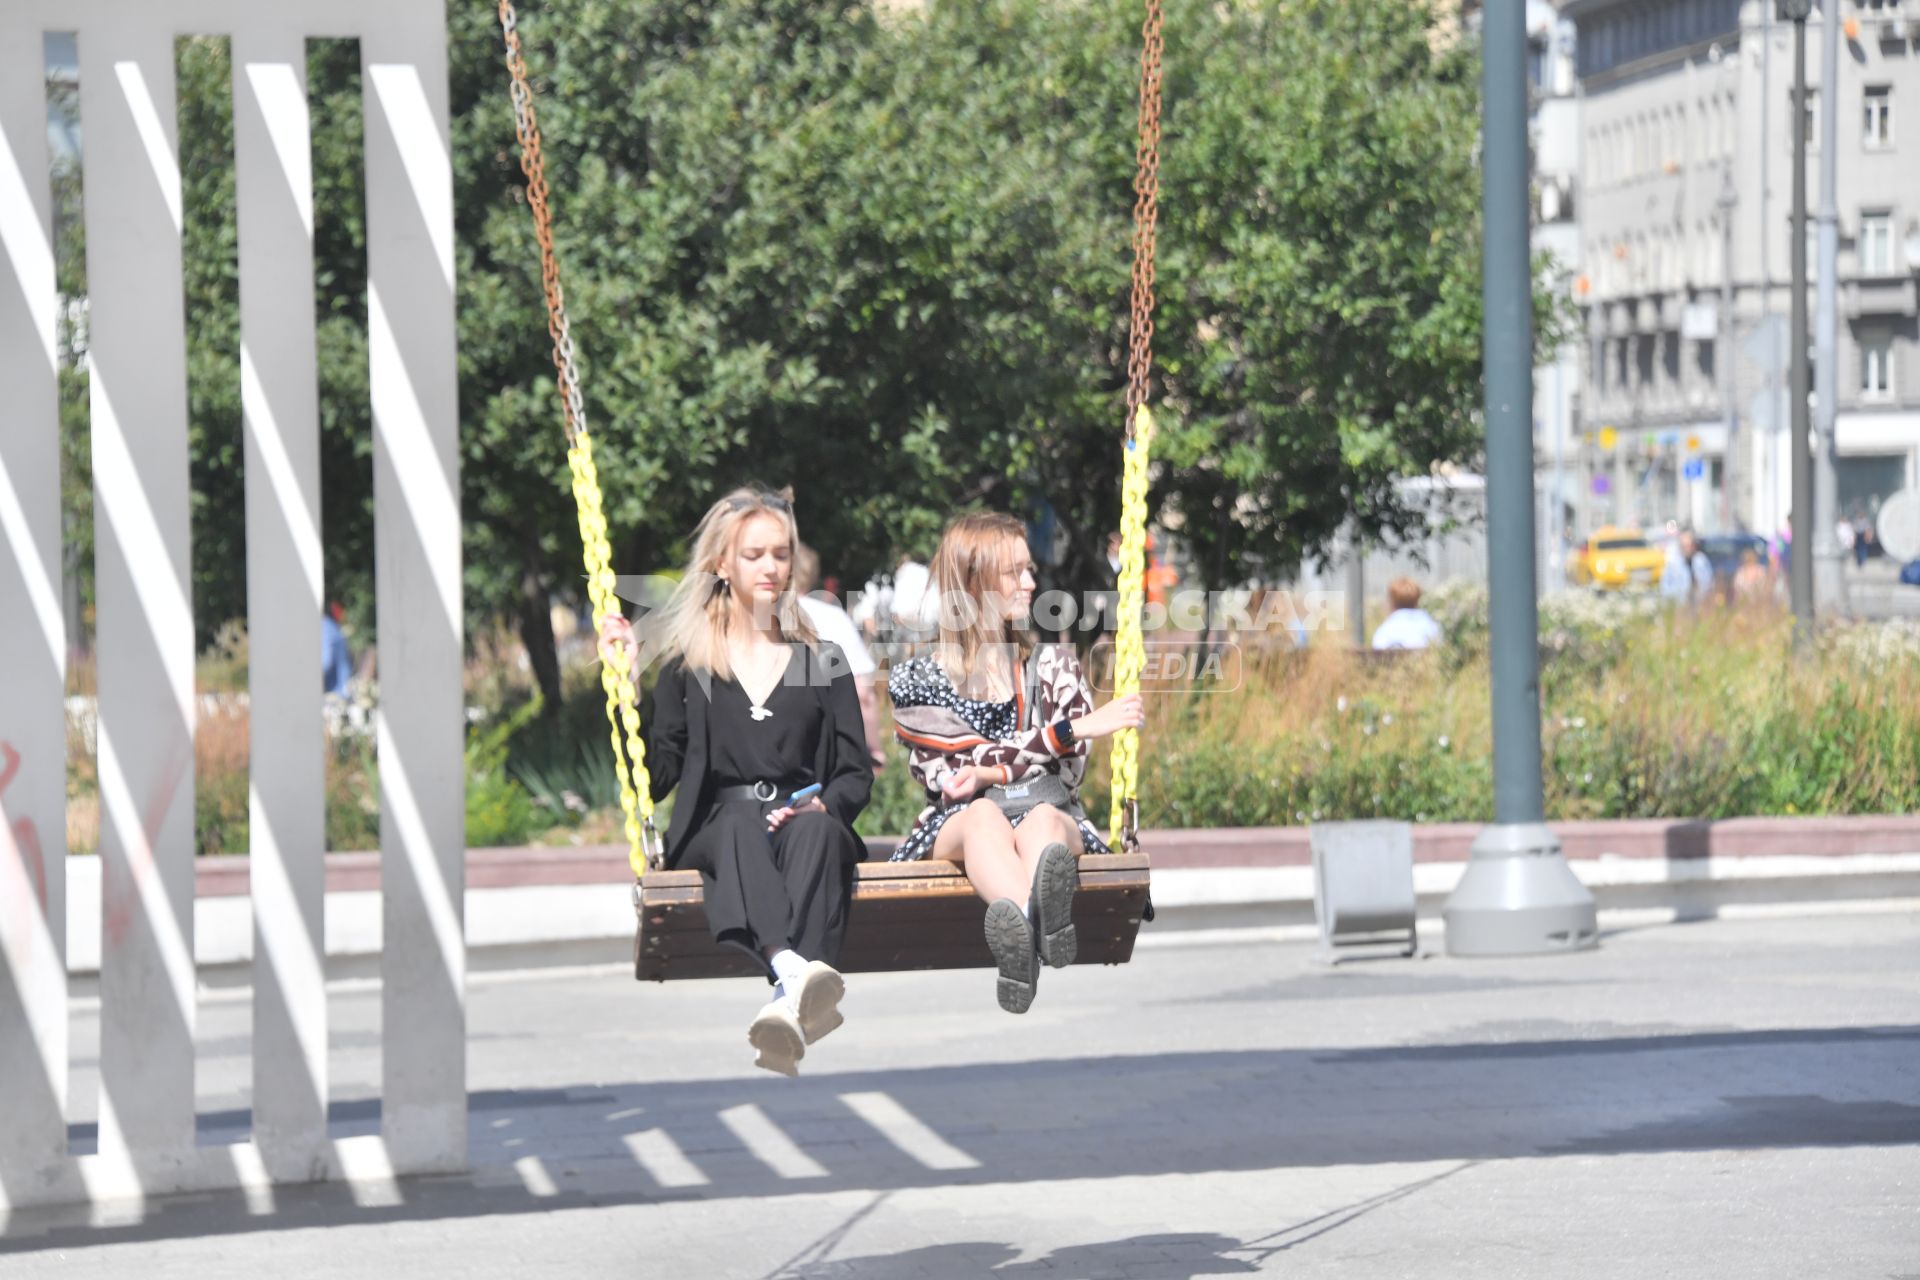 Москва. Девушки отдыхают на качелях у метро  Маяковская.